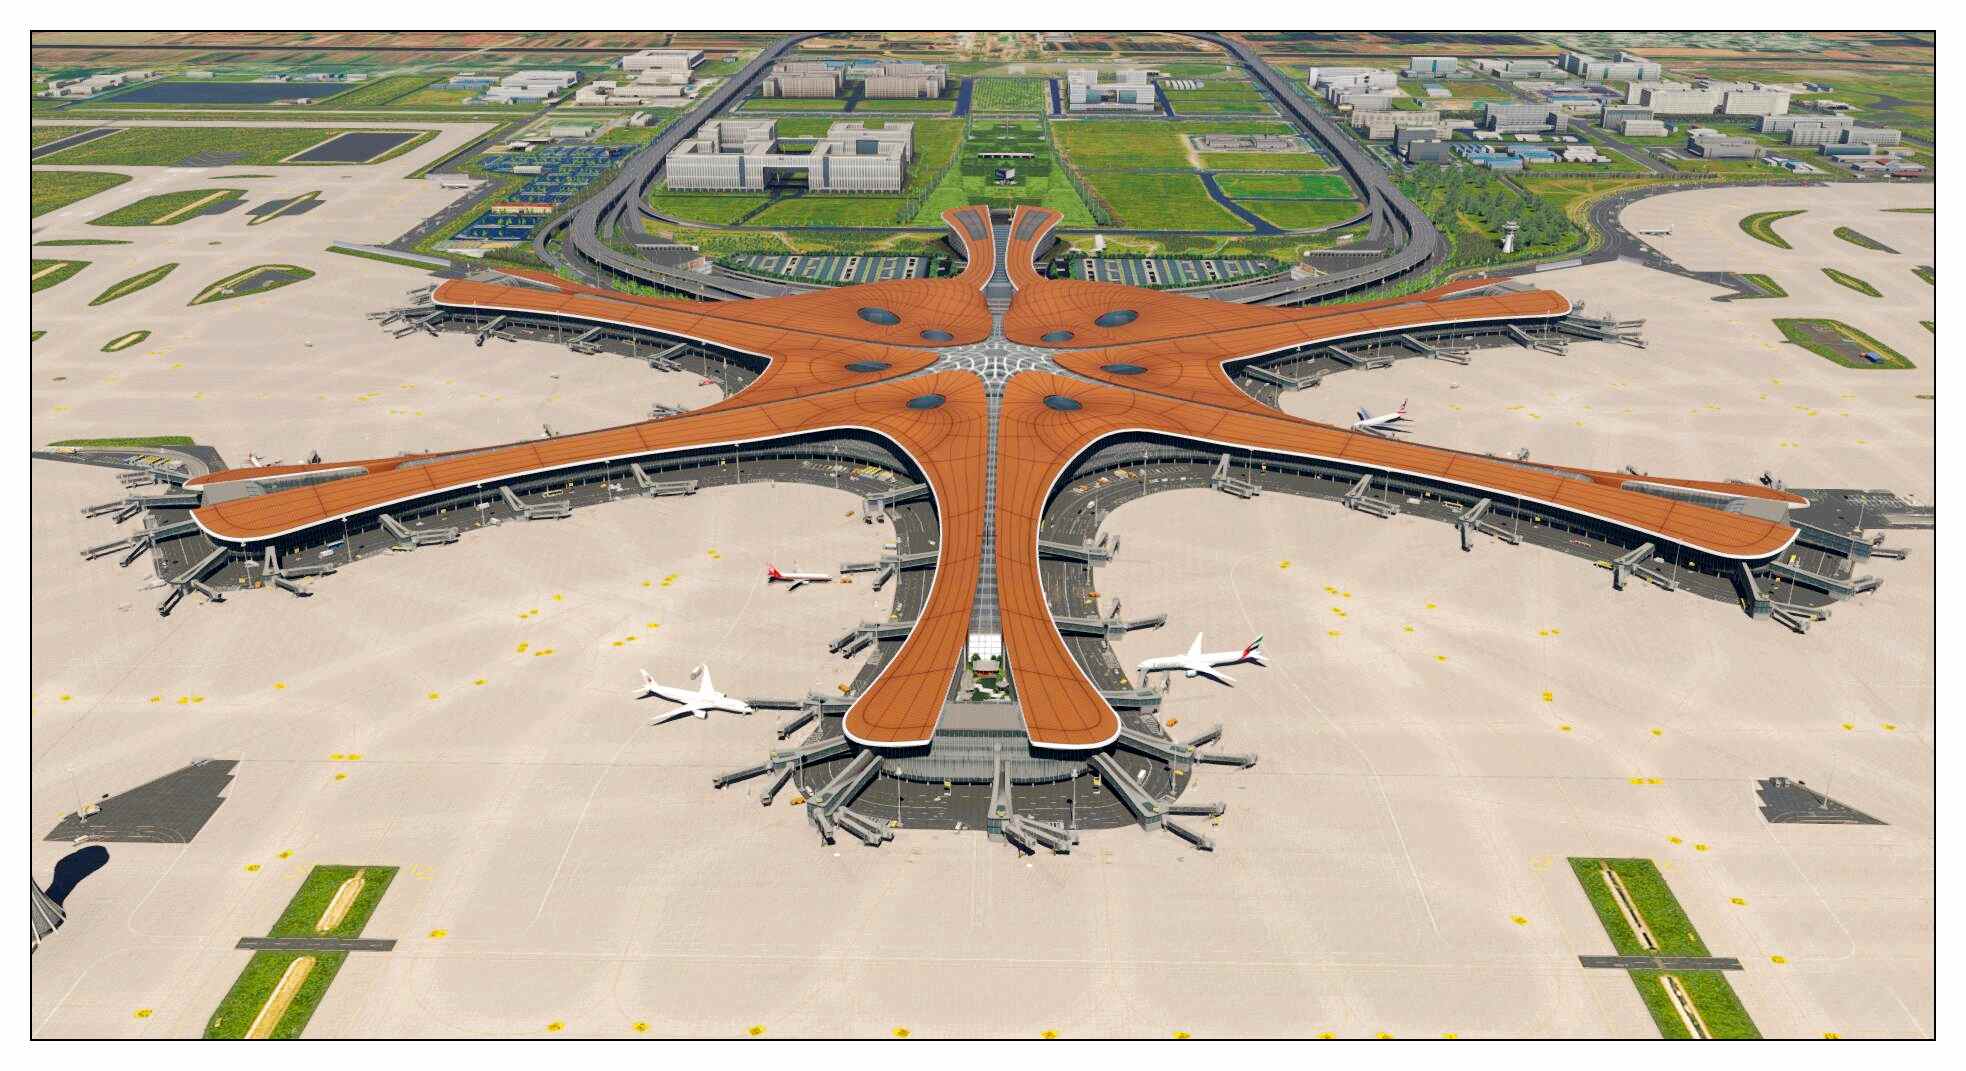 【X-Plane】ZBAD北京大兴国际机场-正式发布-8829 